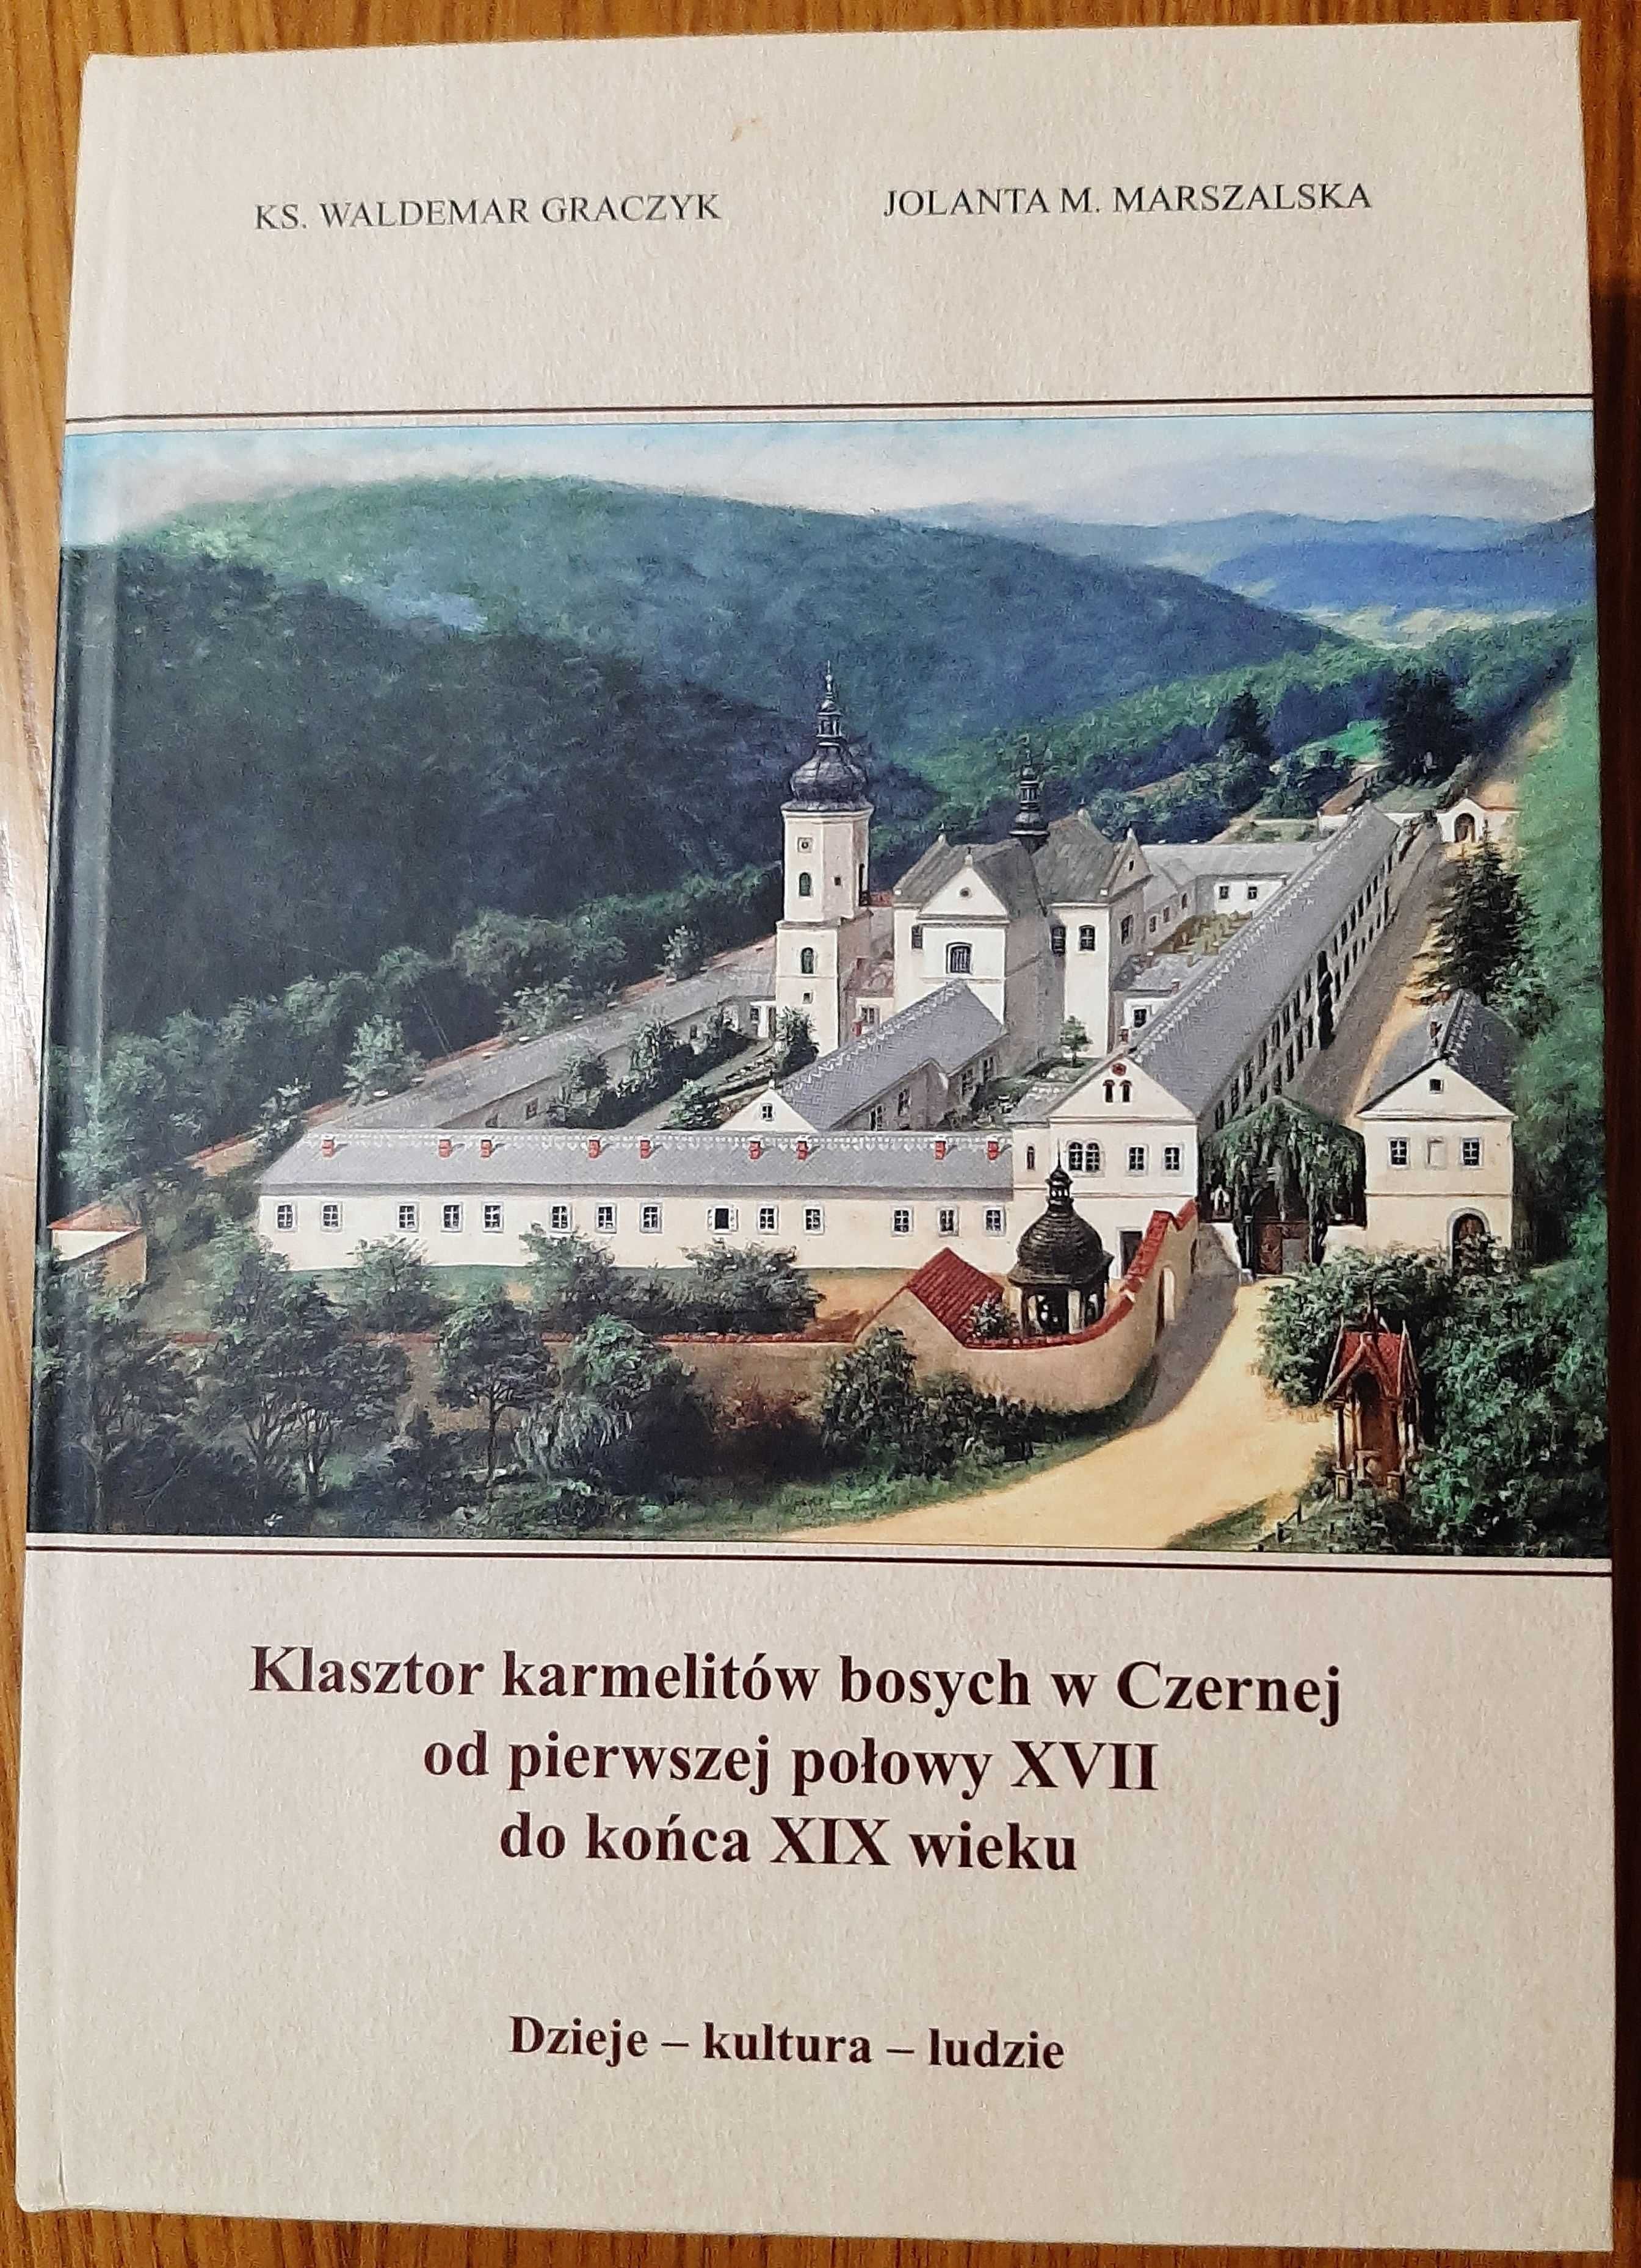 Graczyk W., Marszalska J. M., Klasztor karmelitów bosych w Czernej...